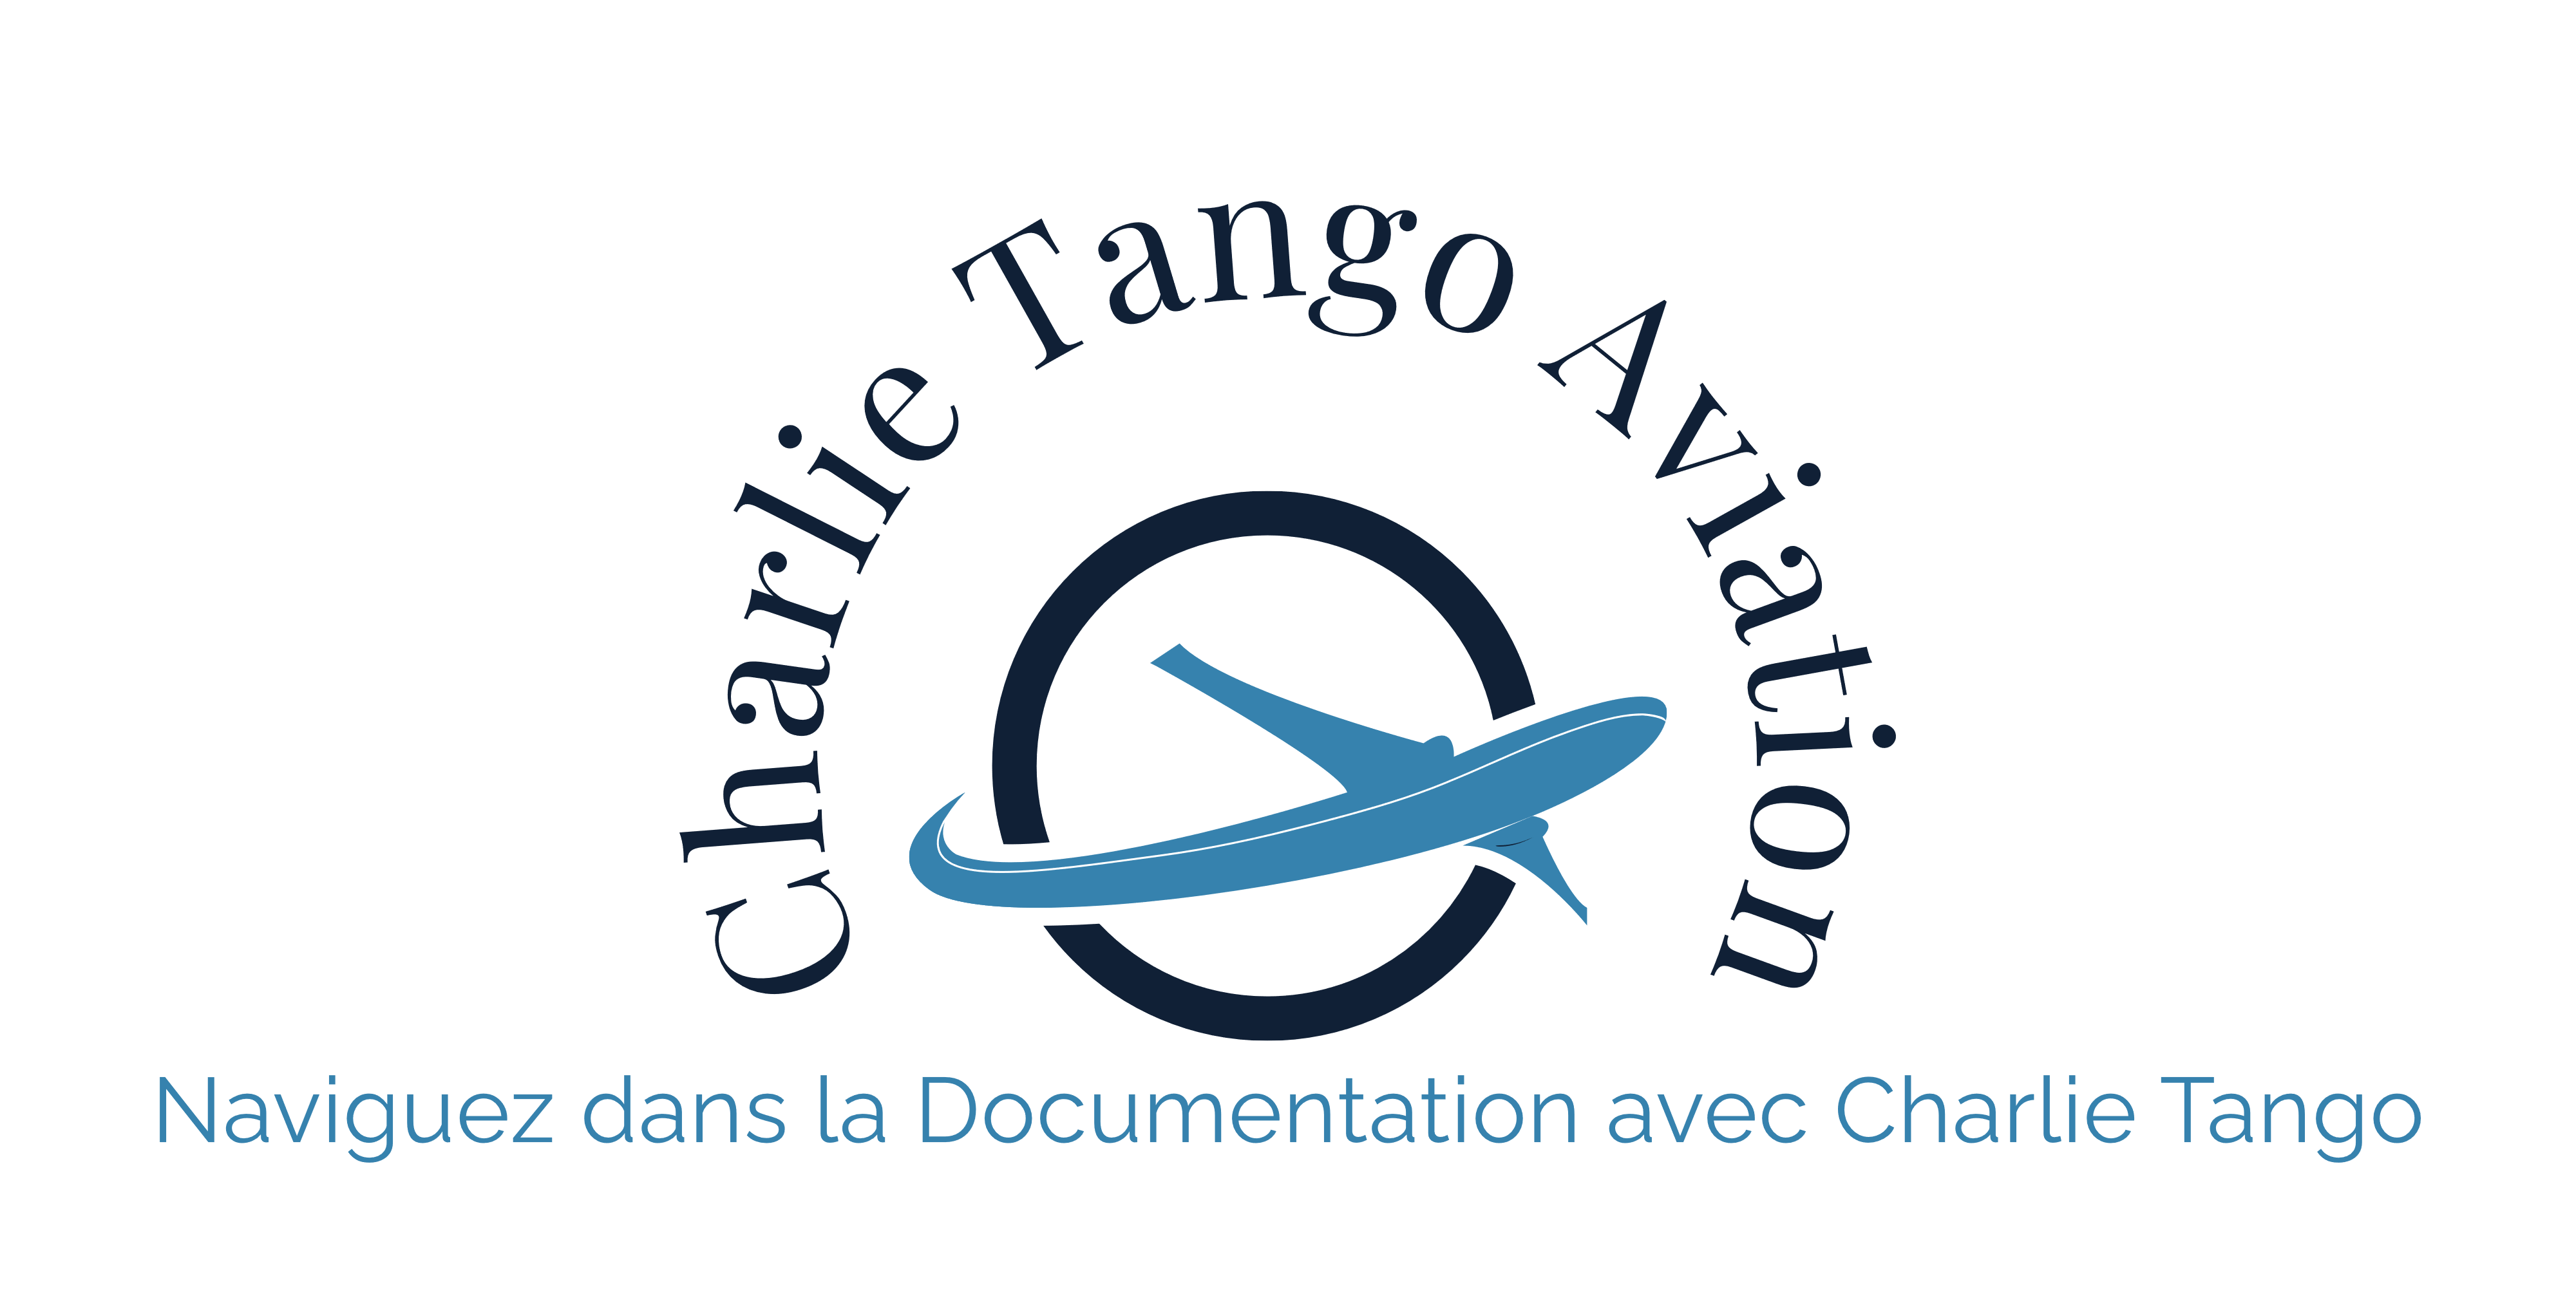 charlietango-aviation